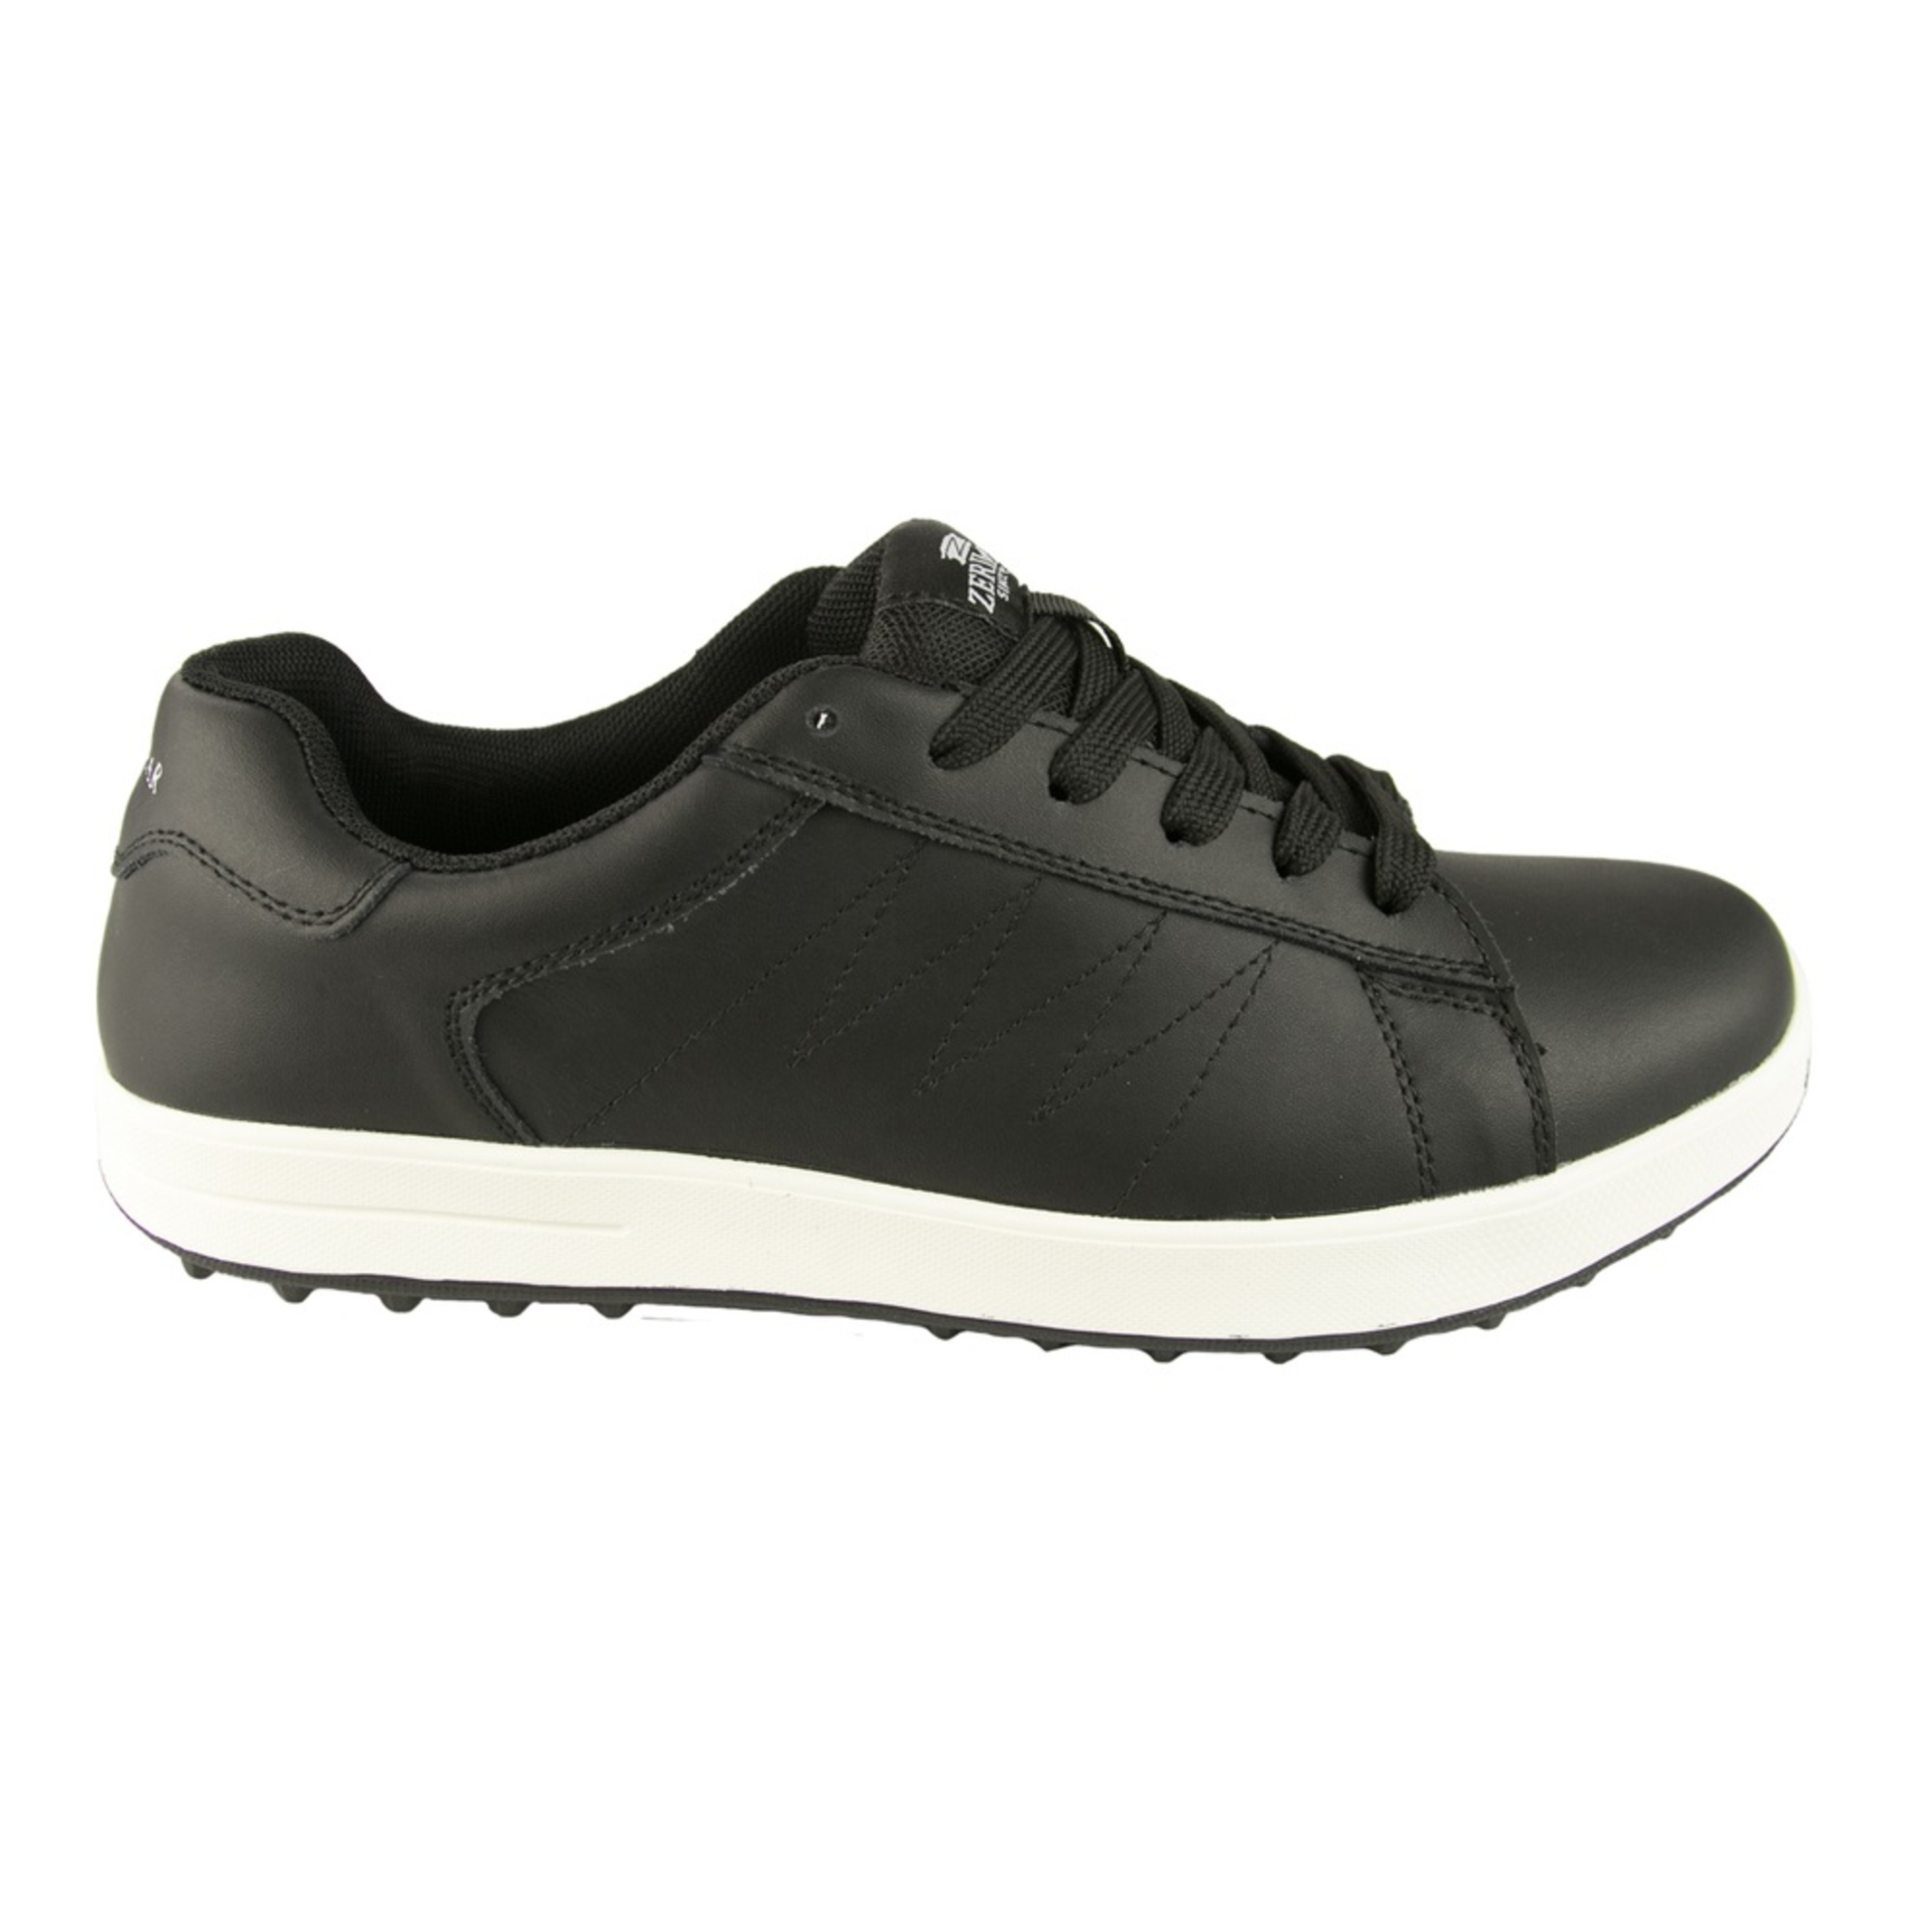 Zapatos De Golf Zerimar Con Bordados - Negro - Zapatos Golf Hombre Zapatillas Piel  MKP